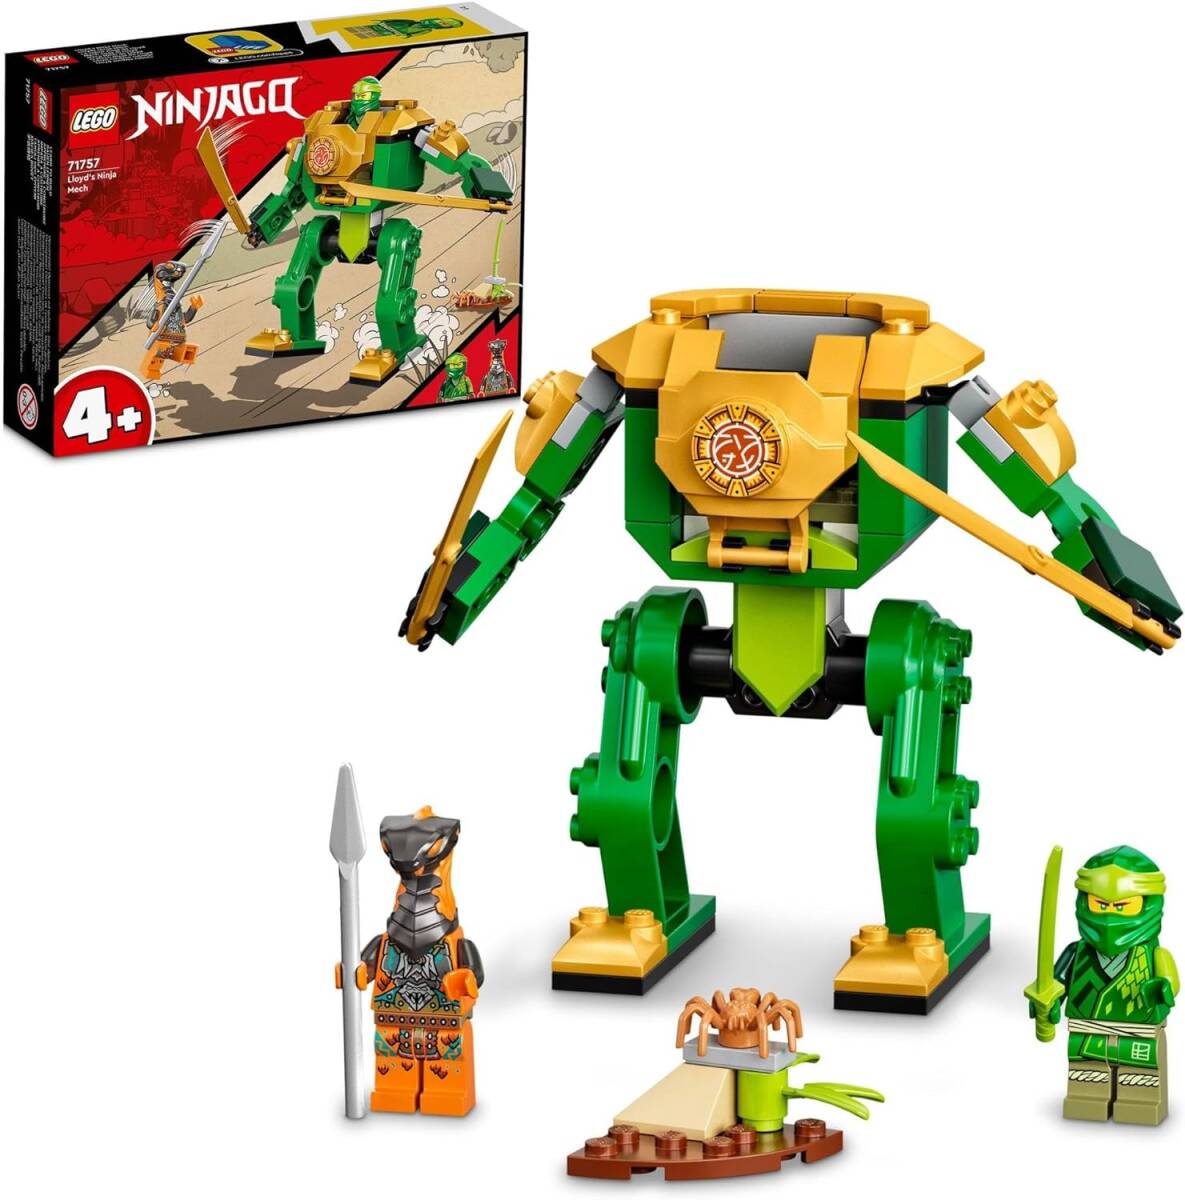 レゴ(LEGO) ニンジャゴー ロイドのニンジャメカスーツ 71757 おもちゃ ブロック プレゼント ロボット 忍者 にんじゃ _画像1